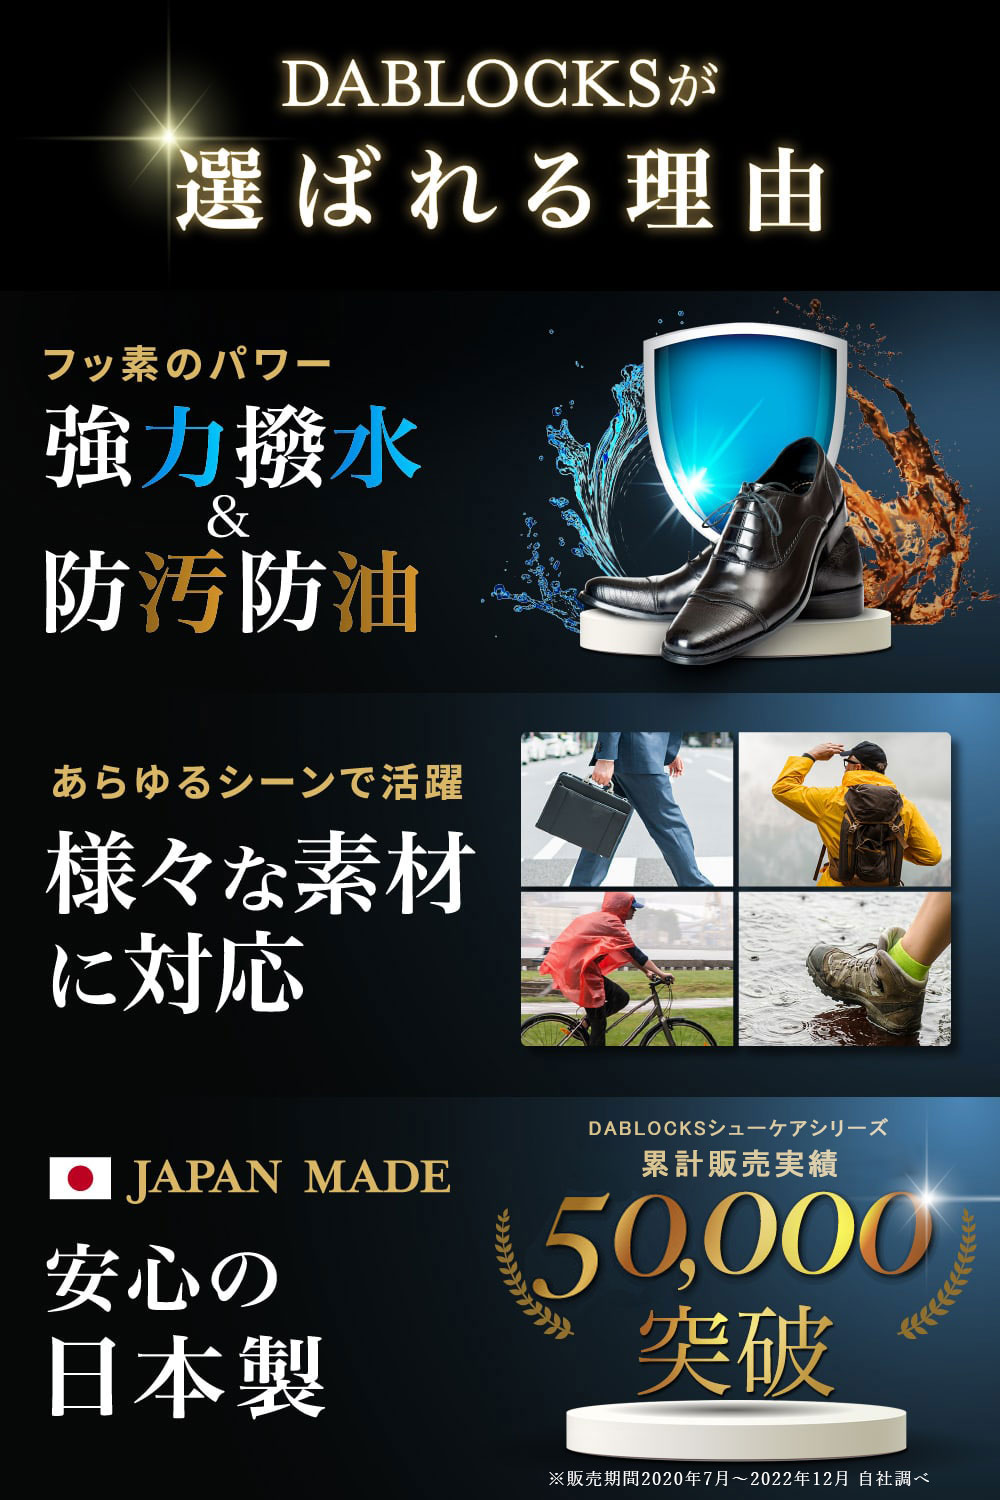  водонепроницаемый спрей . грязный *. масло 420ml сделано в Японии DABLOCKS бесплатная доставка водоотталкивающий спрей обувь спортивные туфли кожа обувь одежда для рюкзак зонт 